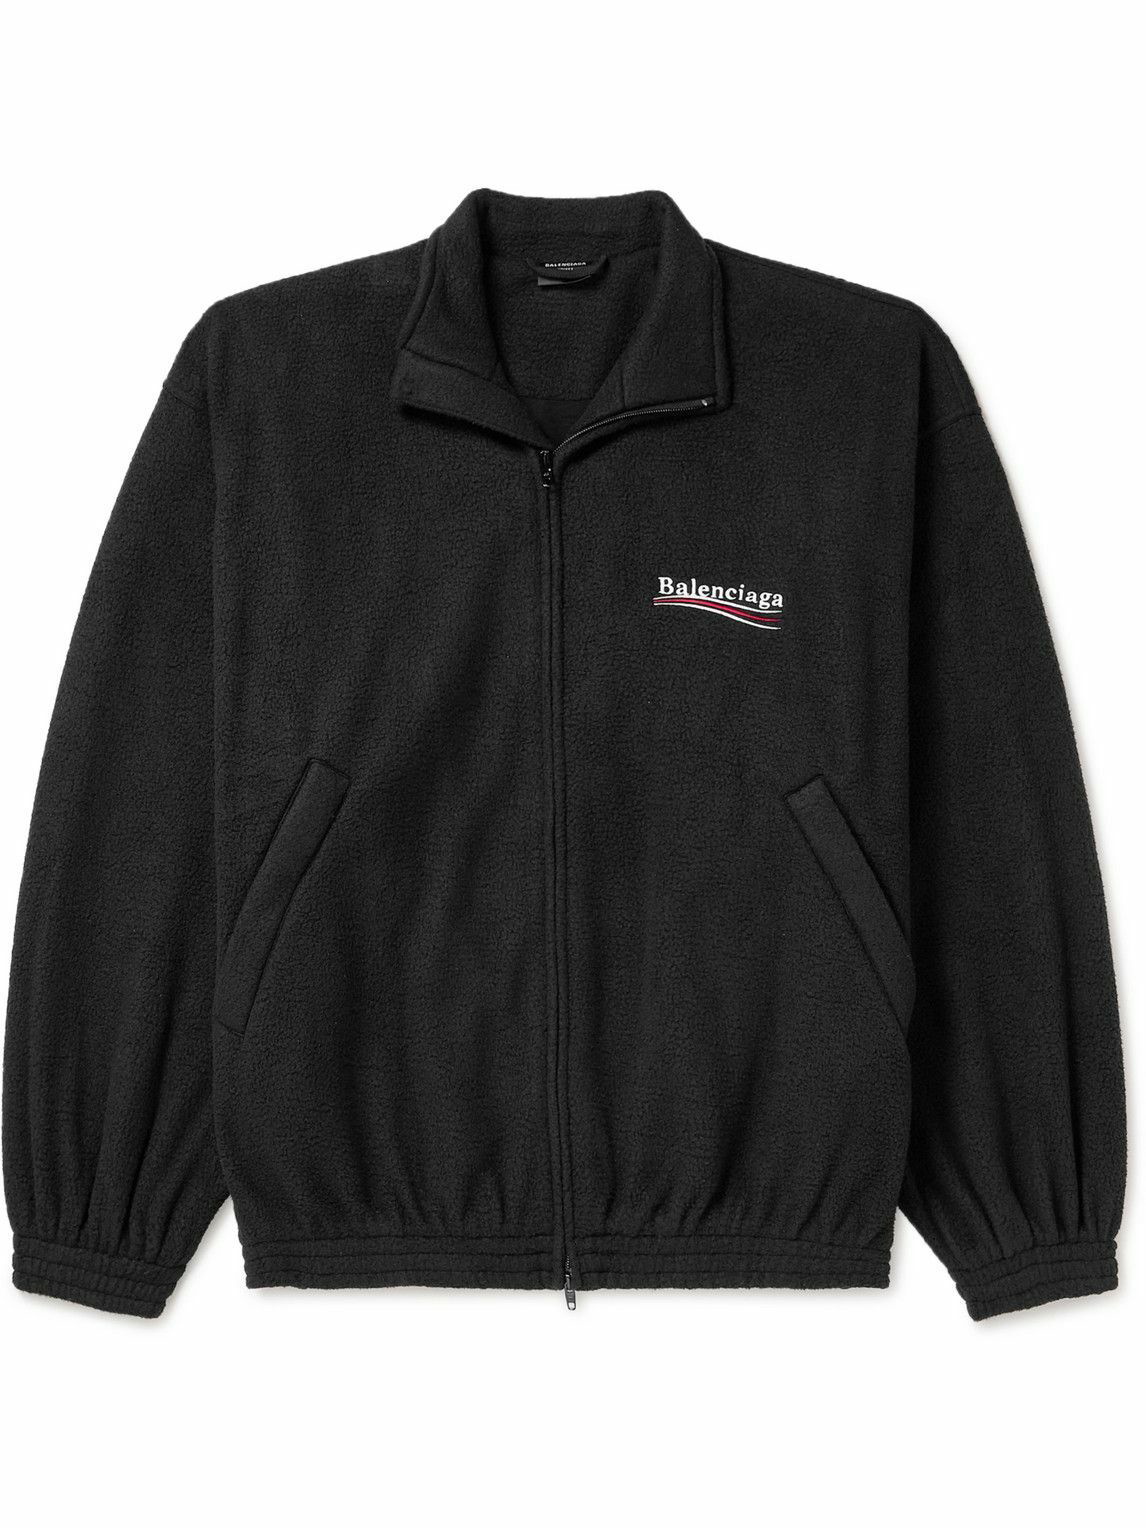 Balenciaga - Oversized Logo-Embroidered Fleece Jacket - Black Balenciaga